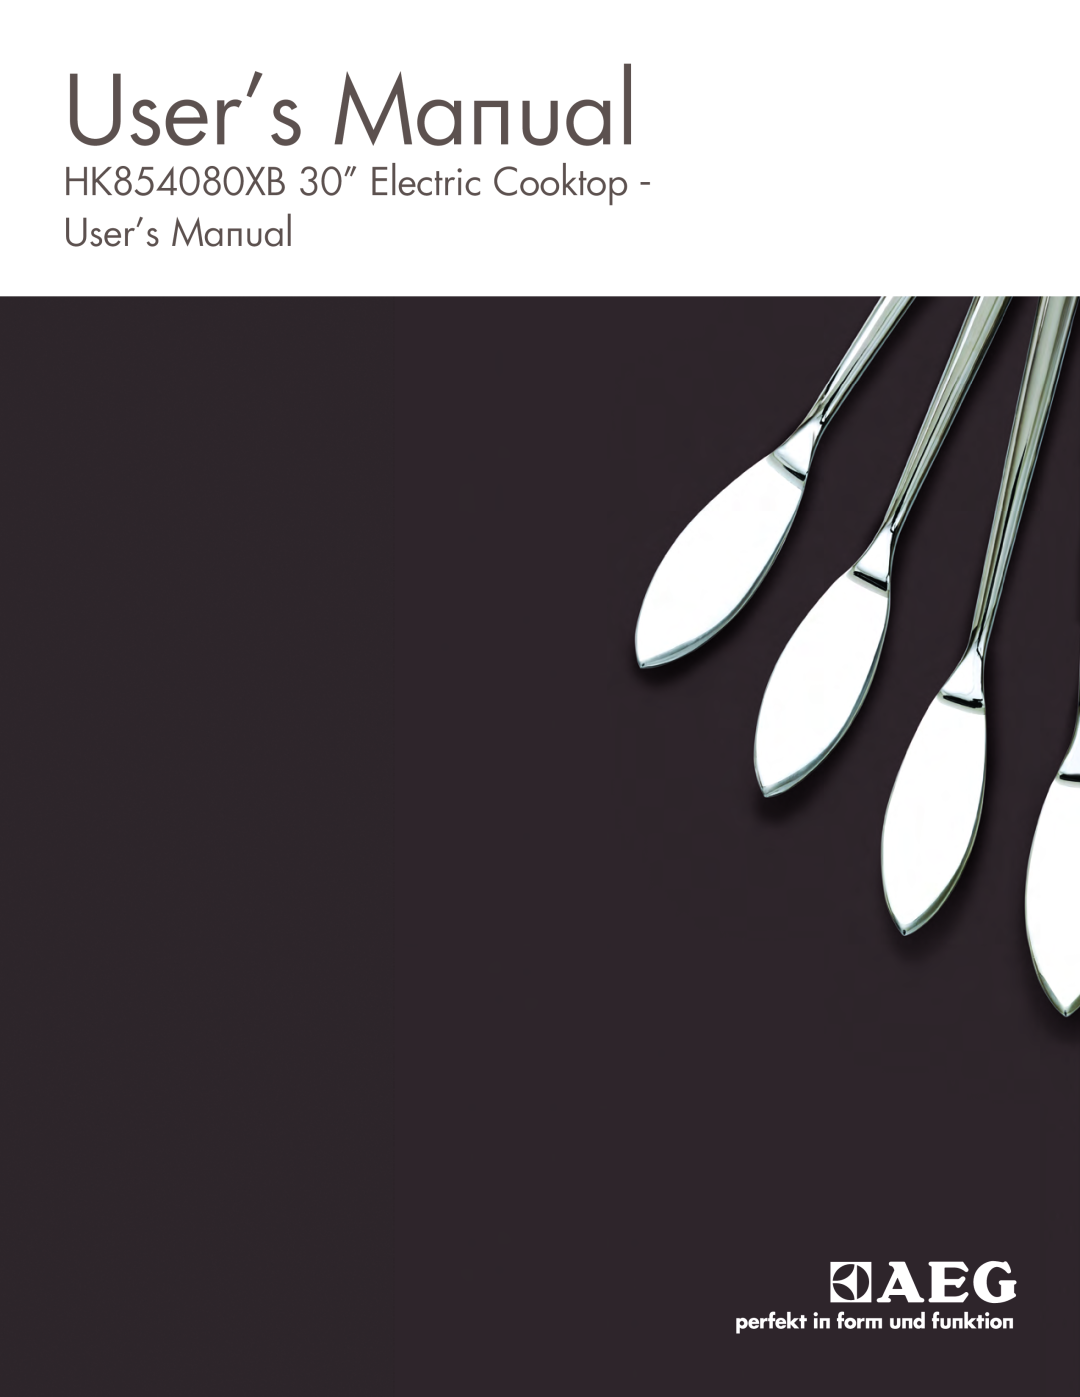 AEG user manual HK854080XB 30” Electric Cooktop - User’s Manual 